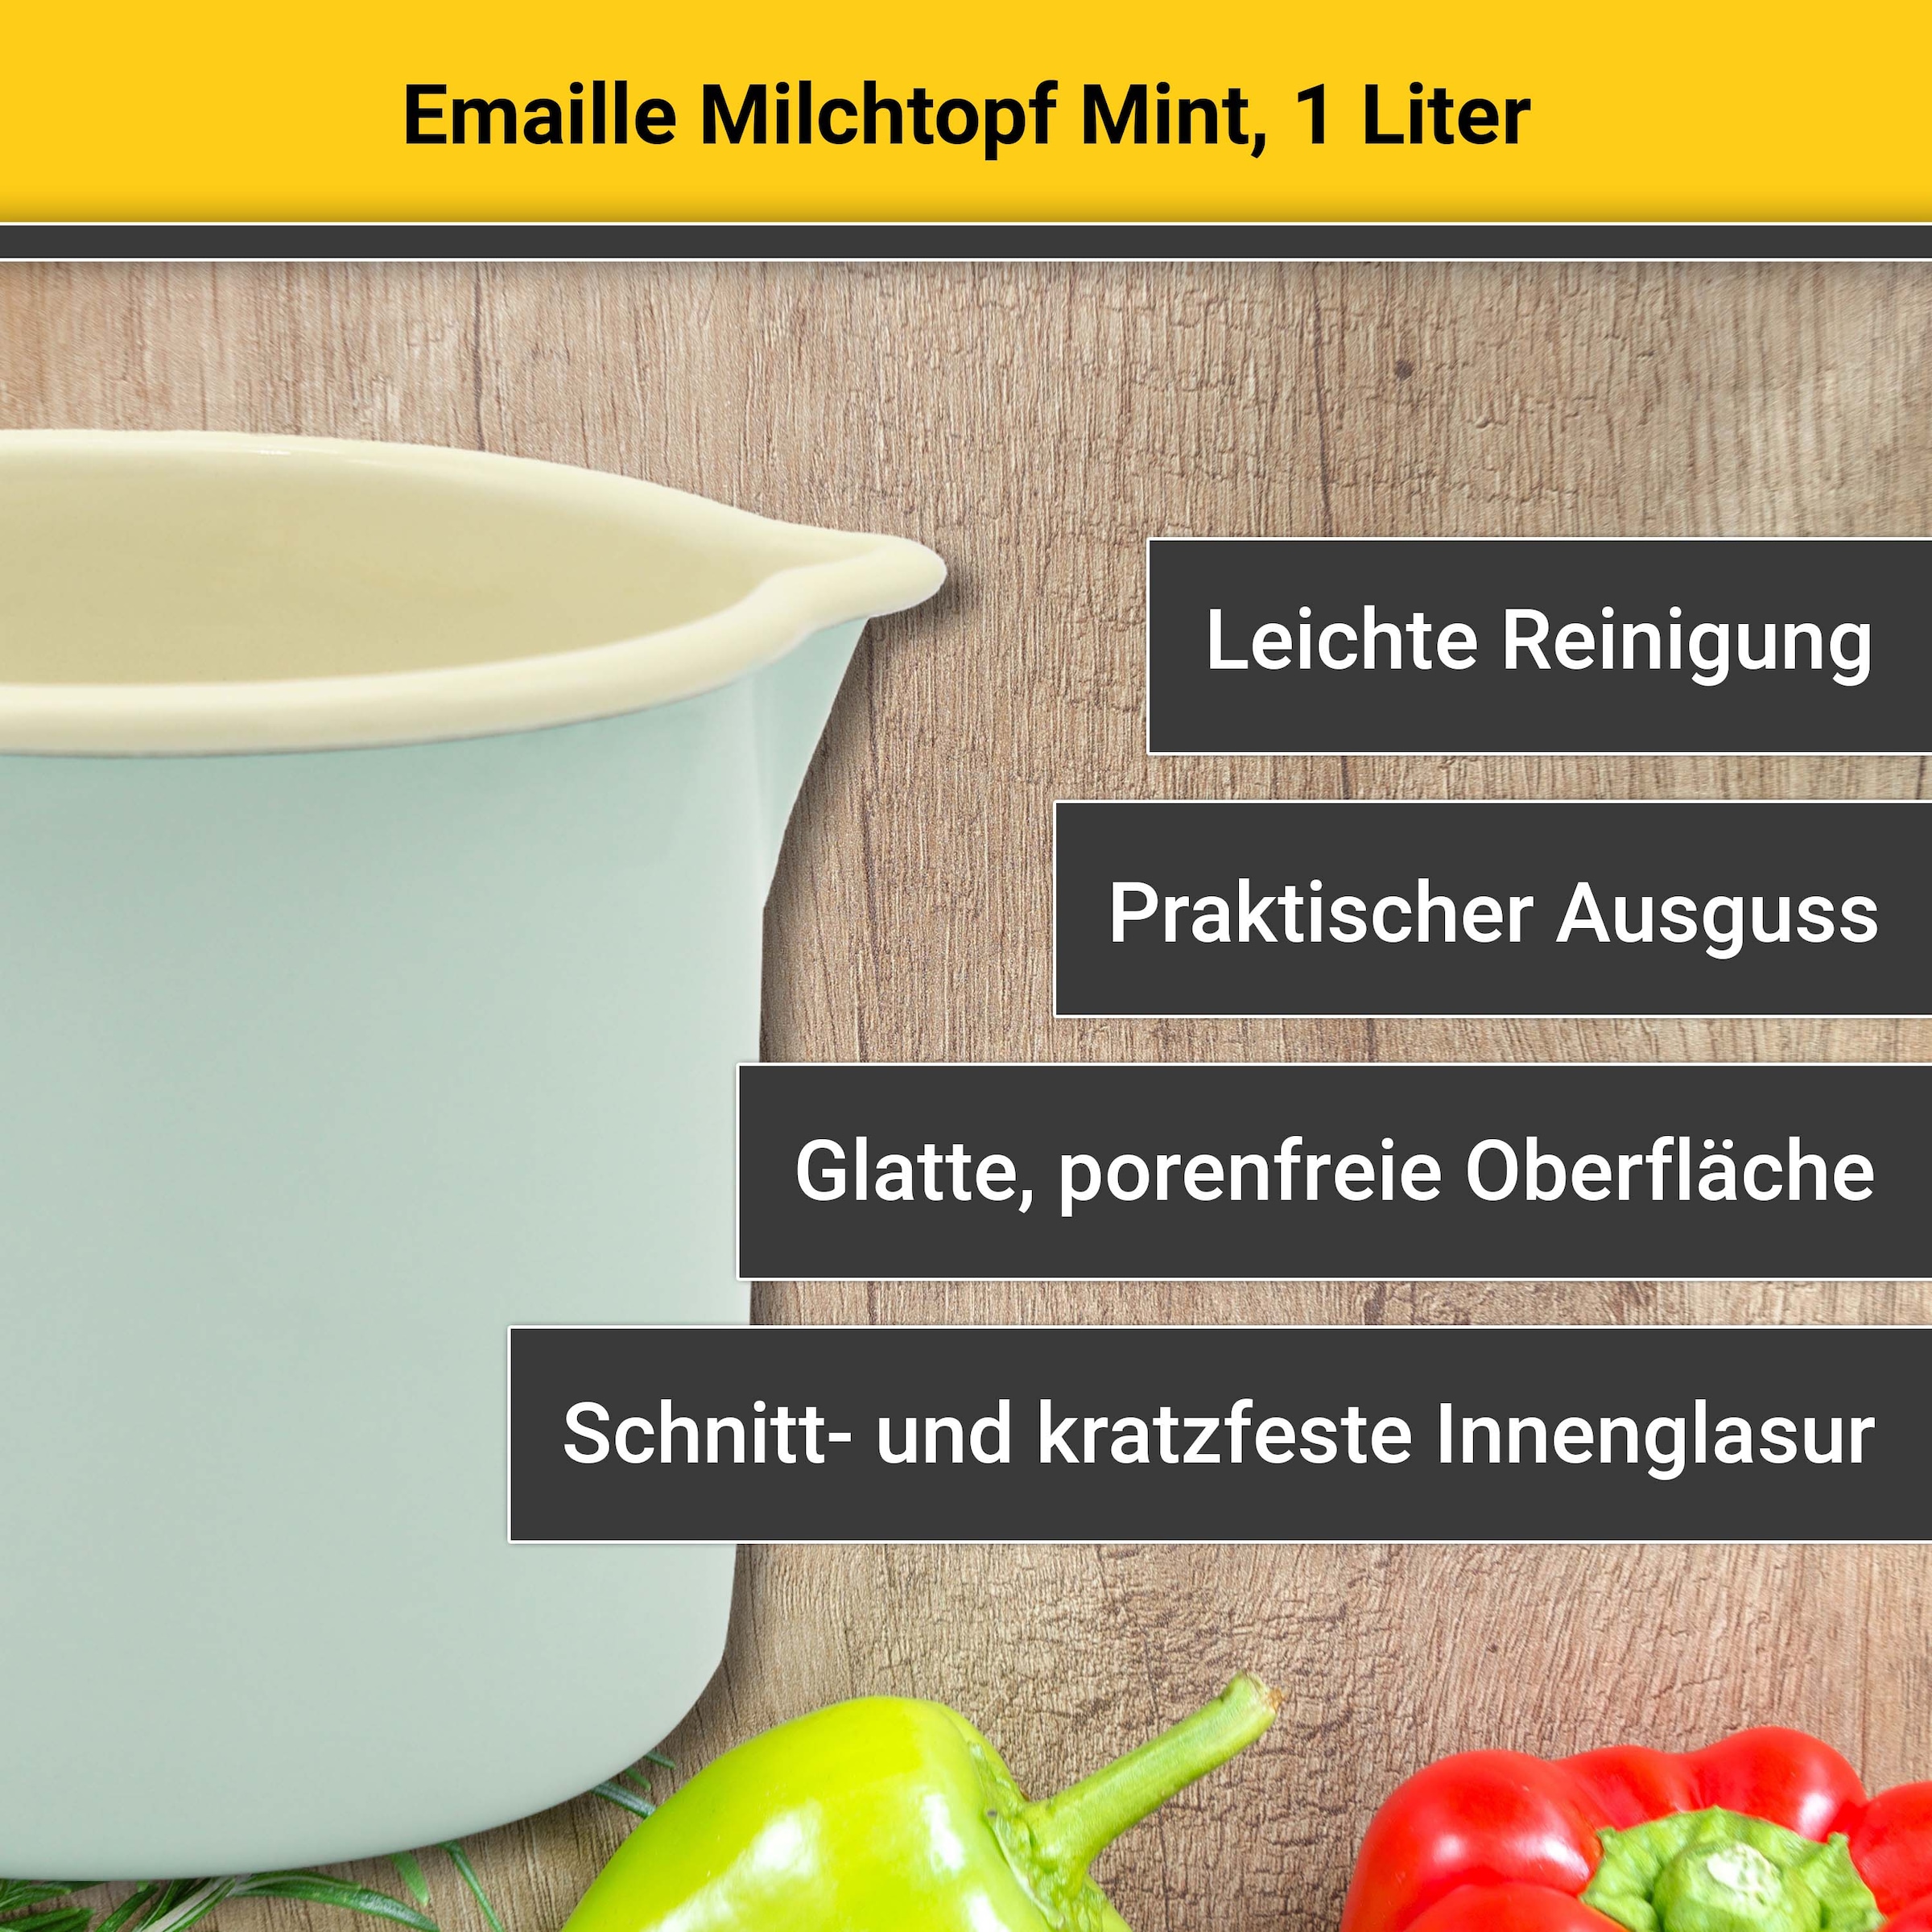 Krüger Milchtopf, Emaille, (1 tlg.), Literskala, 1 Liter, für Induktions-Kochfelder geeignet